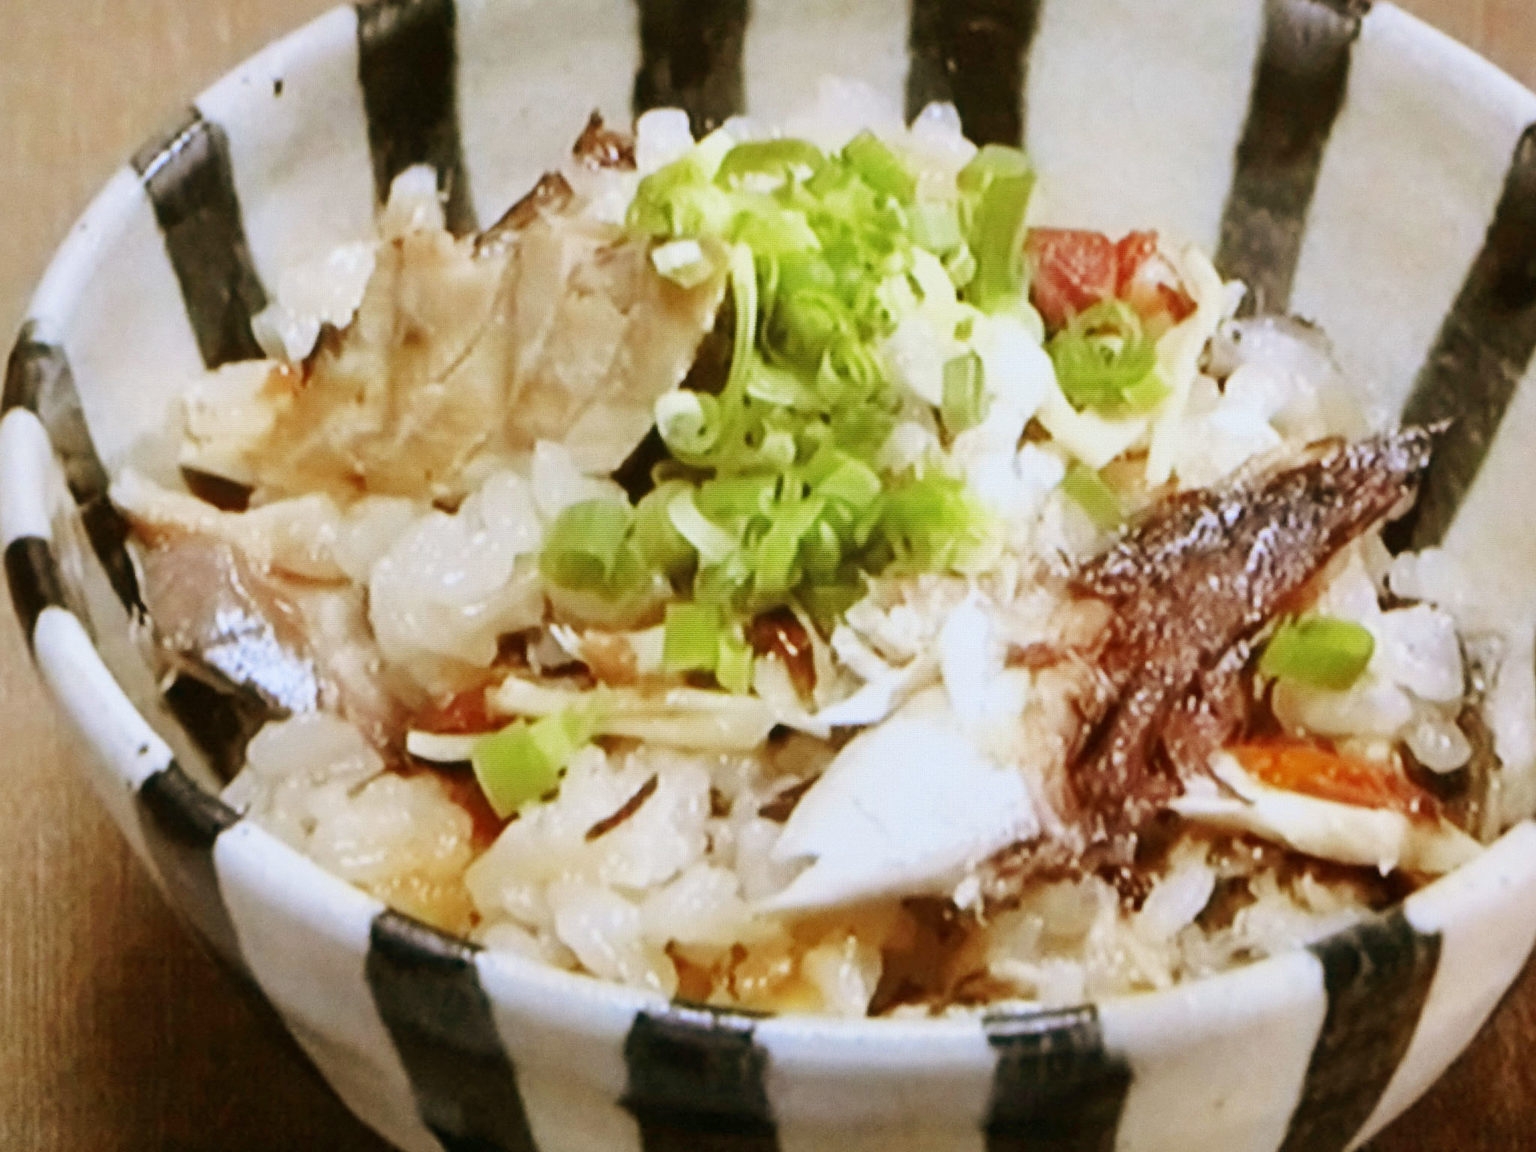 NHKきょうの料理「焼きサバと梅の炊き込みご飯」のレシピbyしらいのりこ 10月26日 おさらいキッチン